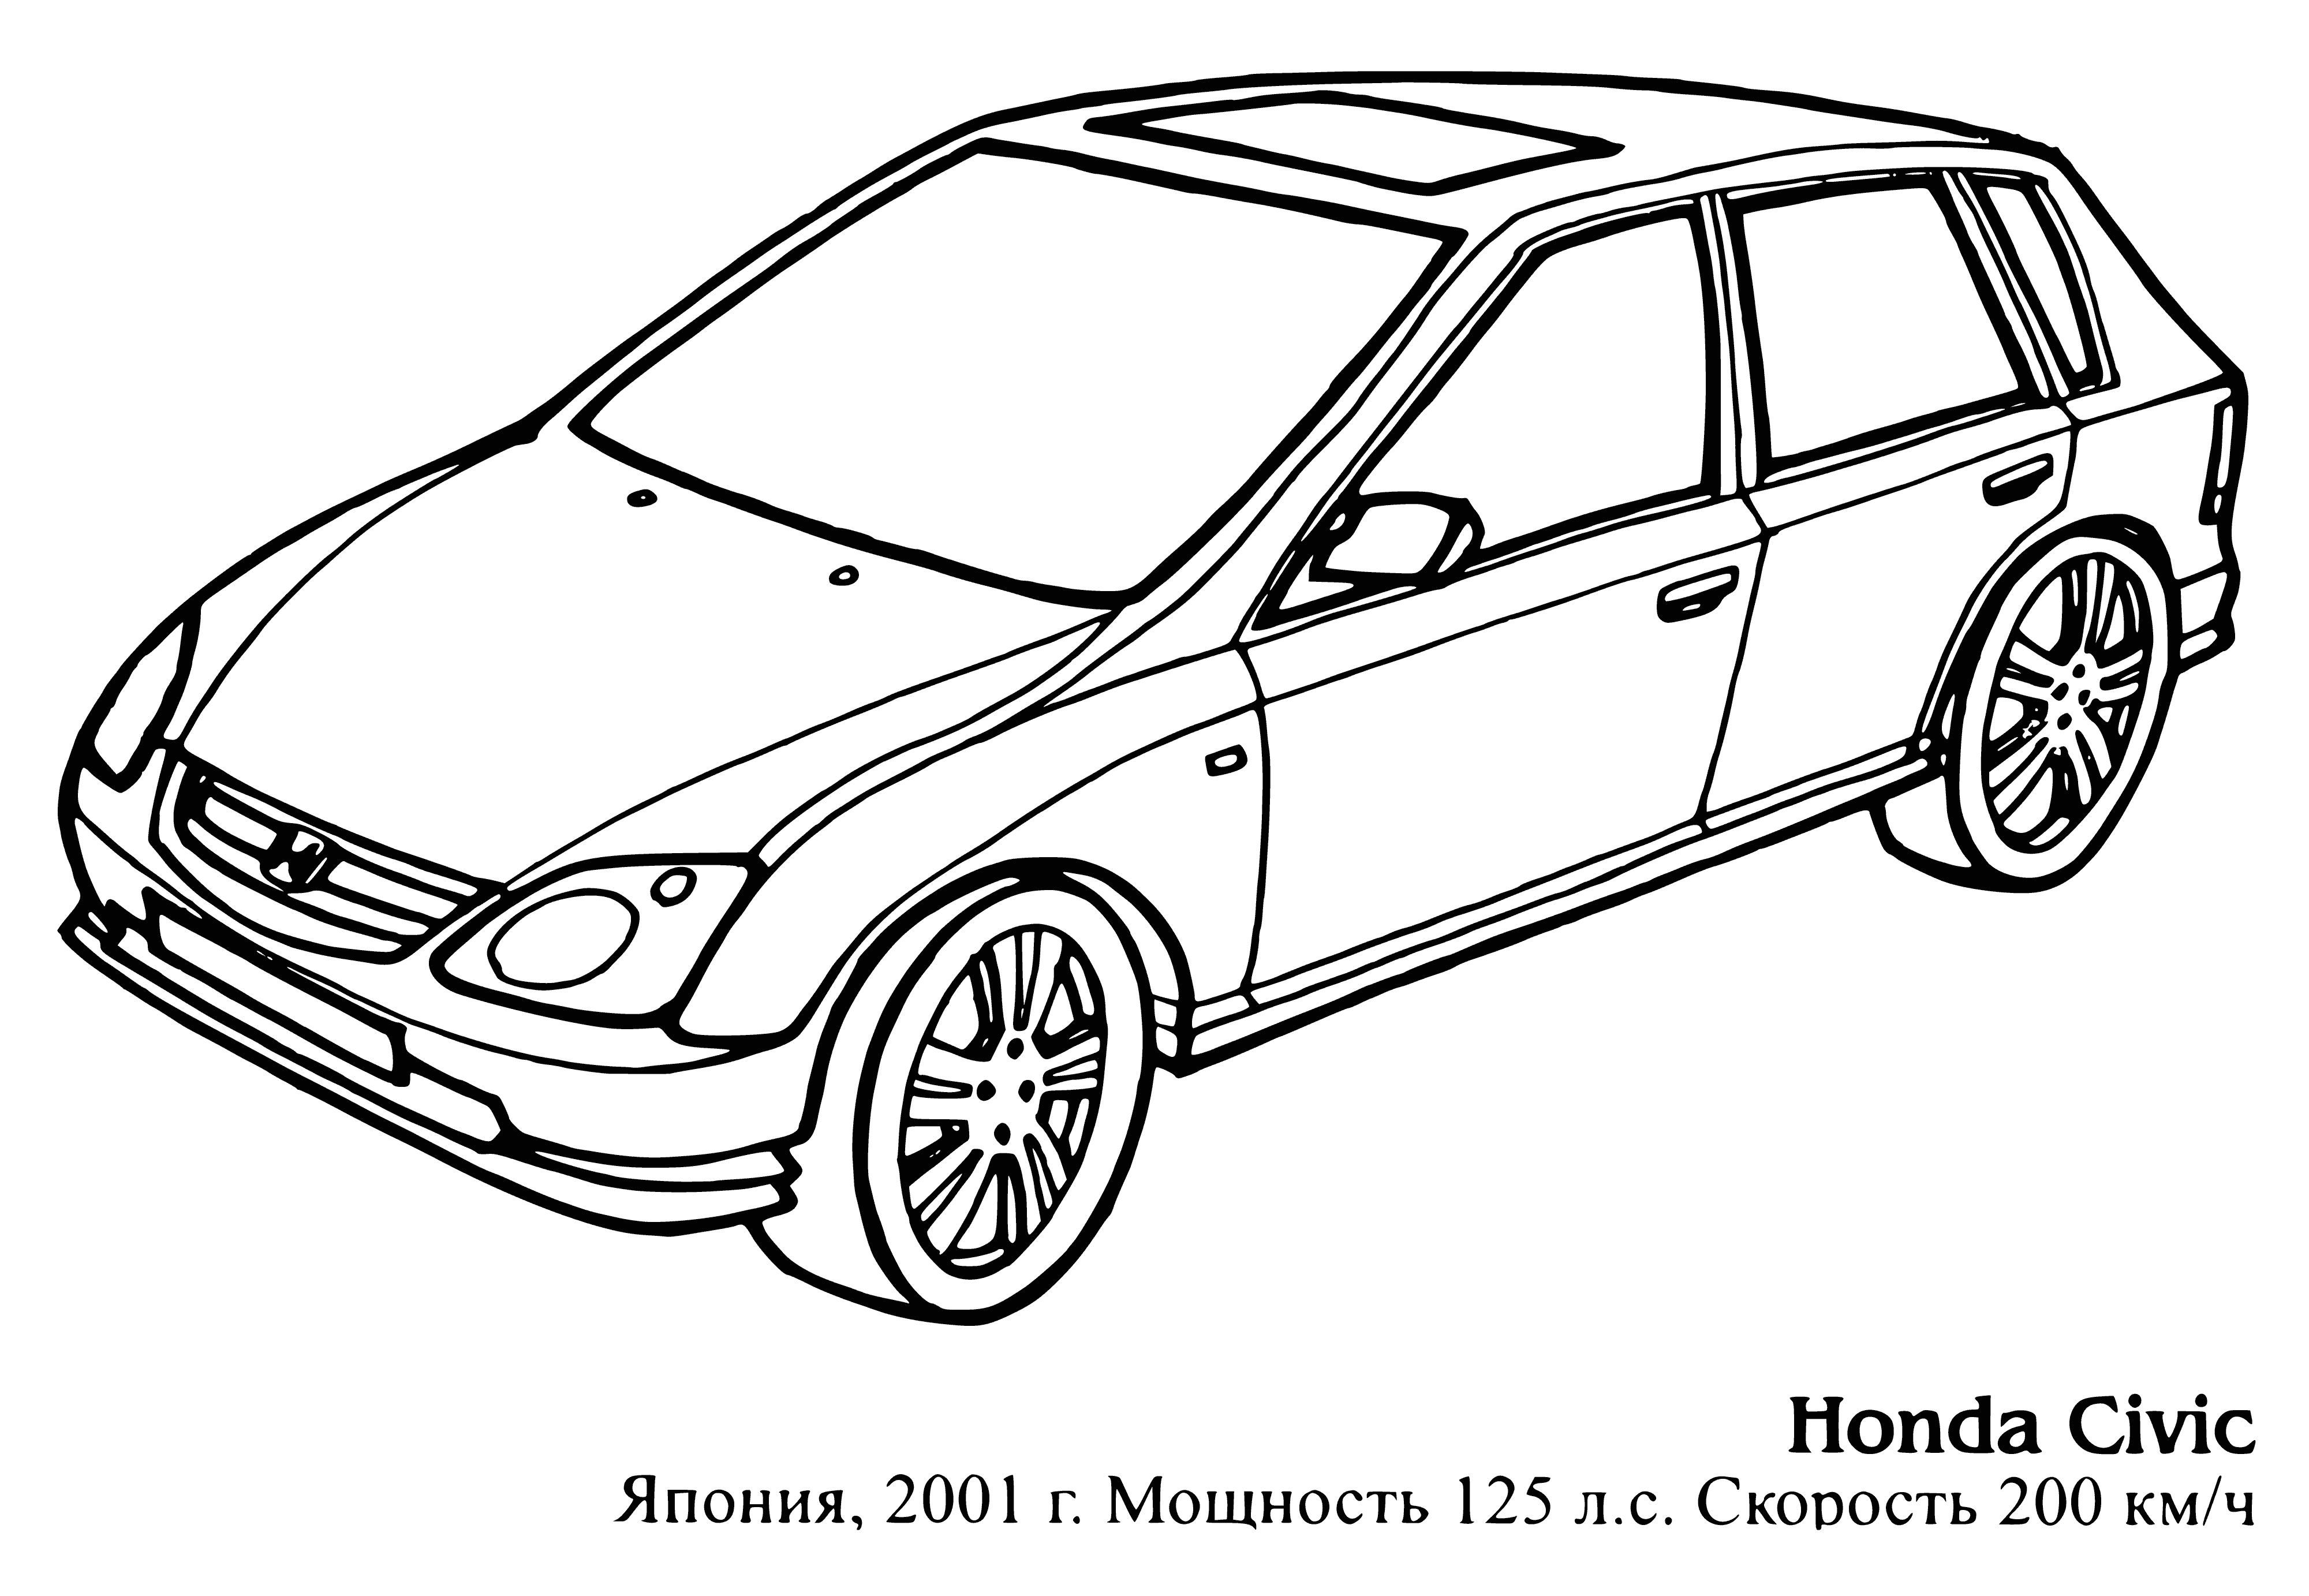 Honda Civic boyama sayfası